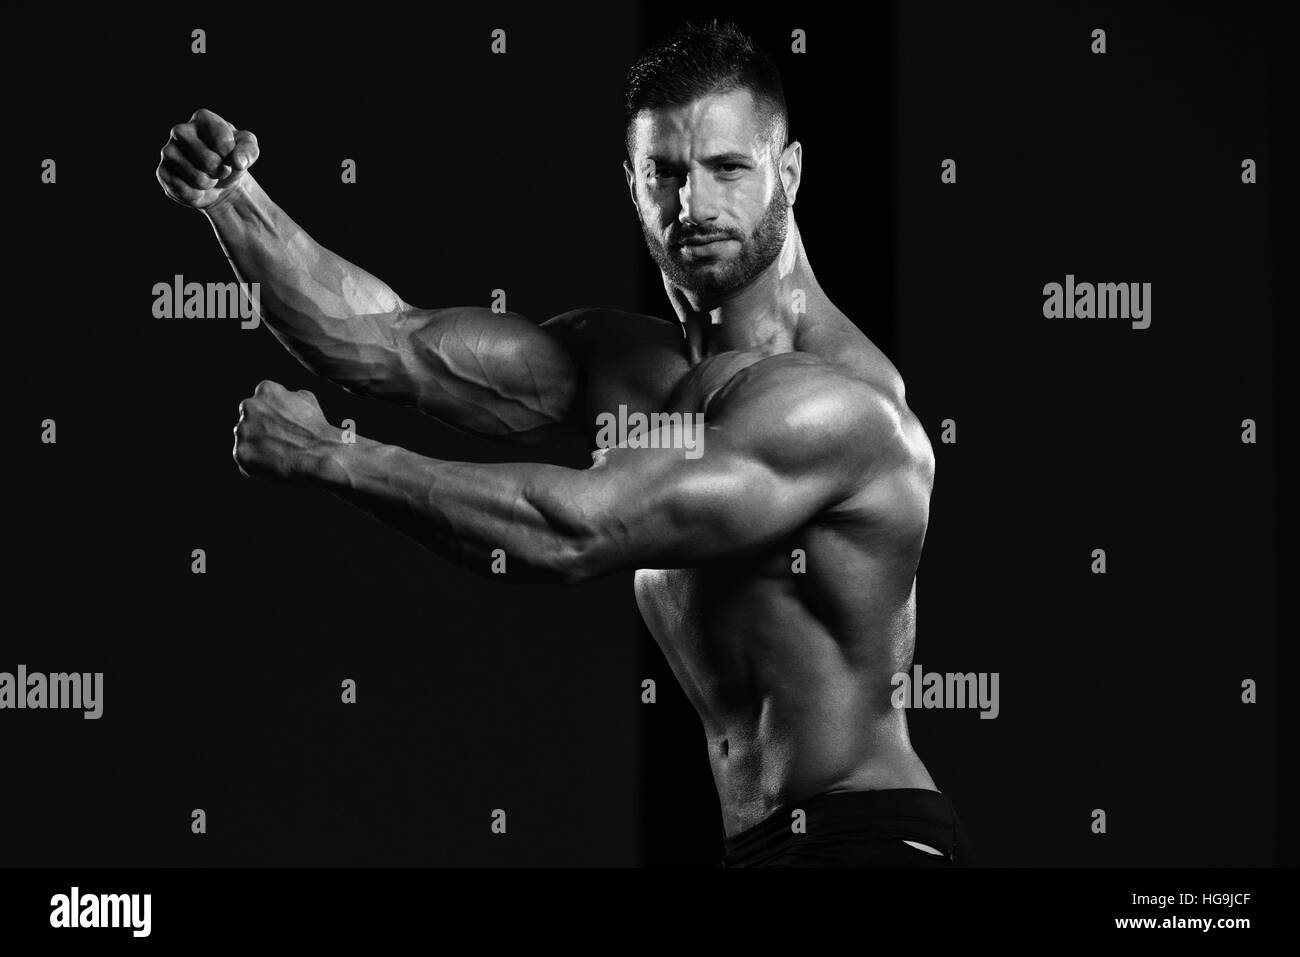 Homme en bonne santé Soyons forts dans la salle de sport et Flexing Muscles musculaire - Fitness Model Posing Bodybuilder athlétiques exercices après Banque D'Images